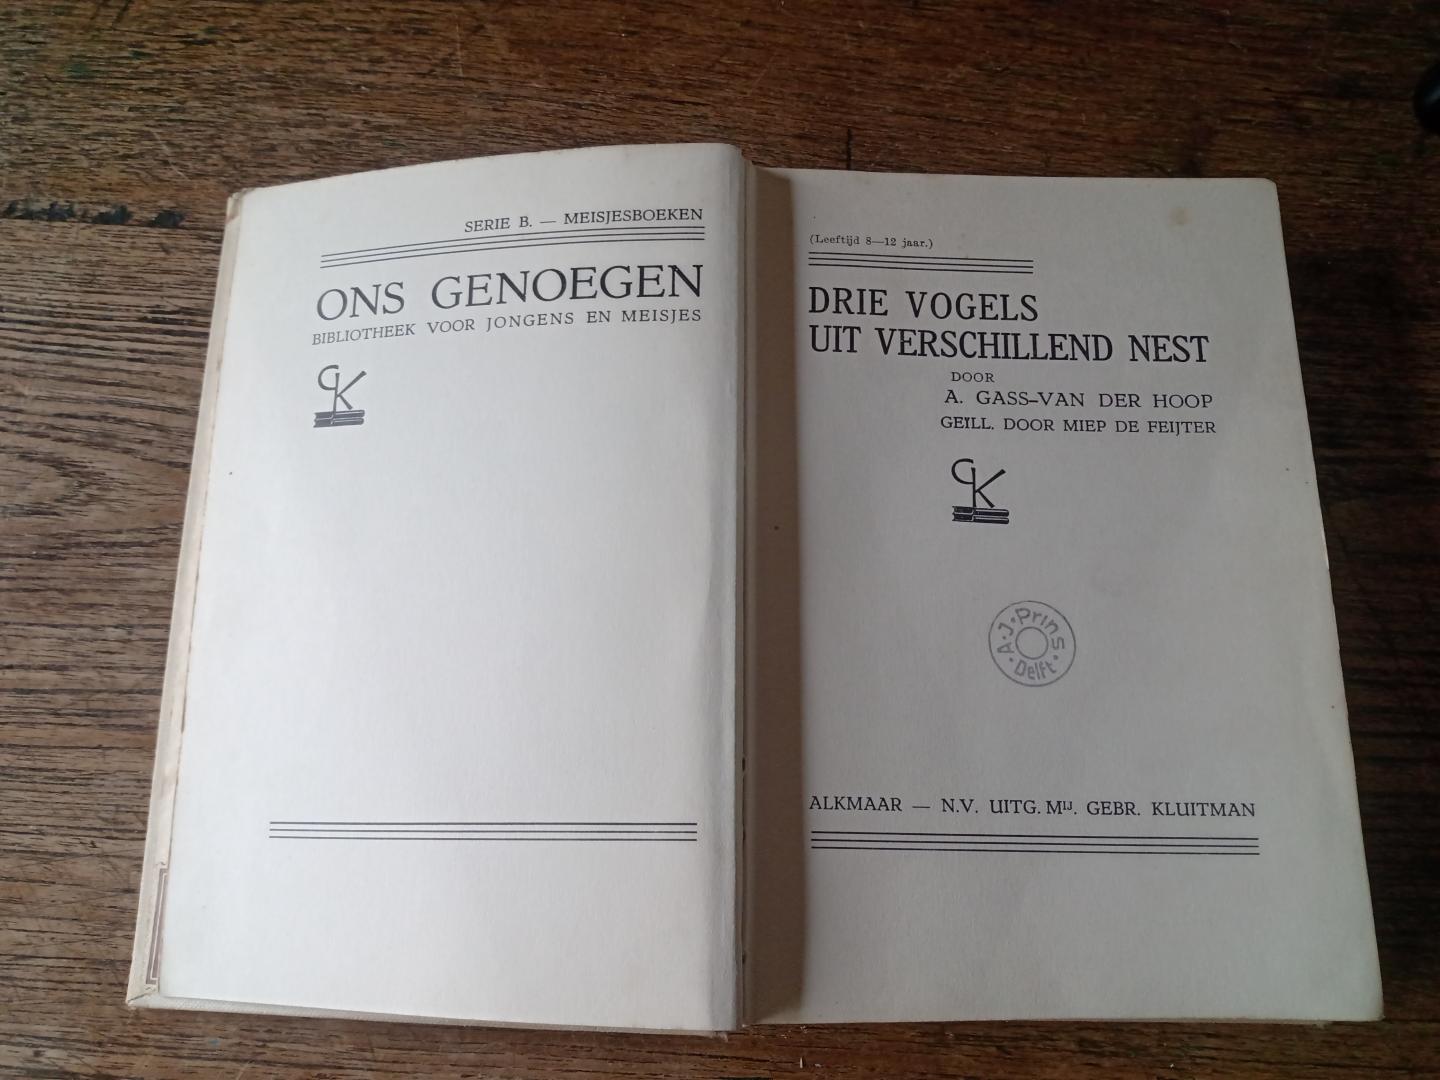 Gass-van der Hoop, A. ( ill. Miep de Feijter ) - Drie vogels uit verschillend nest